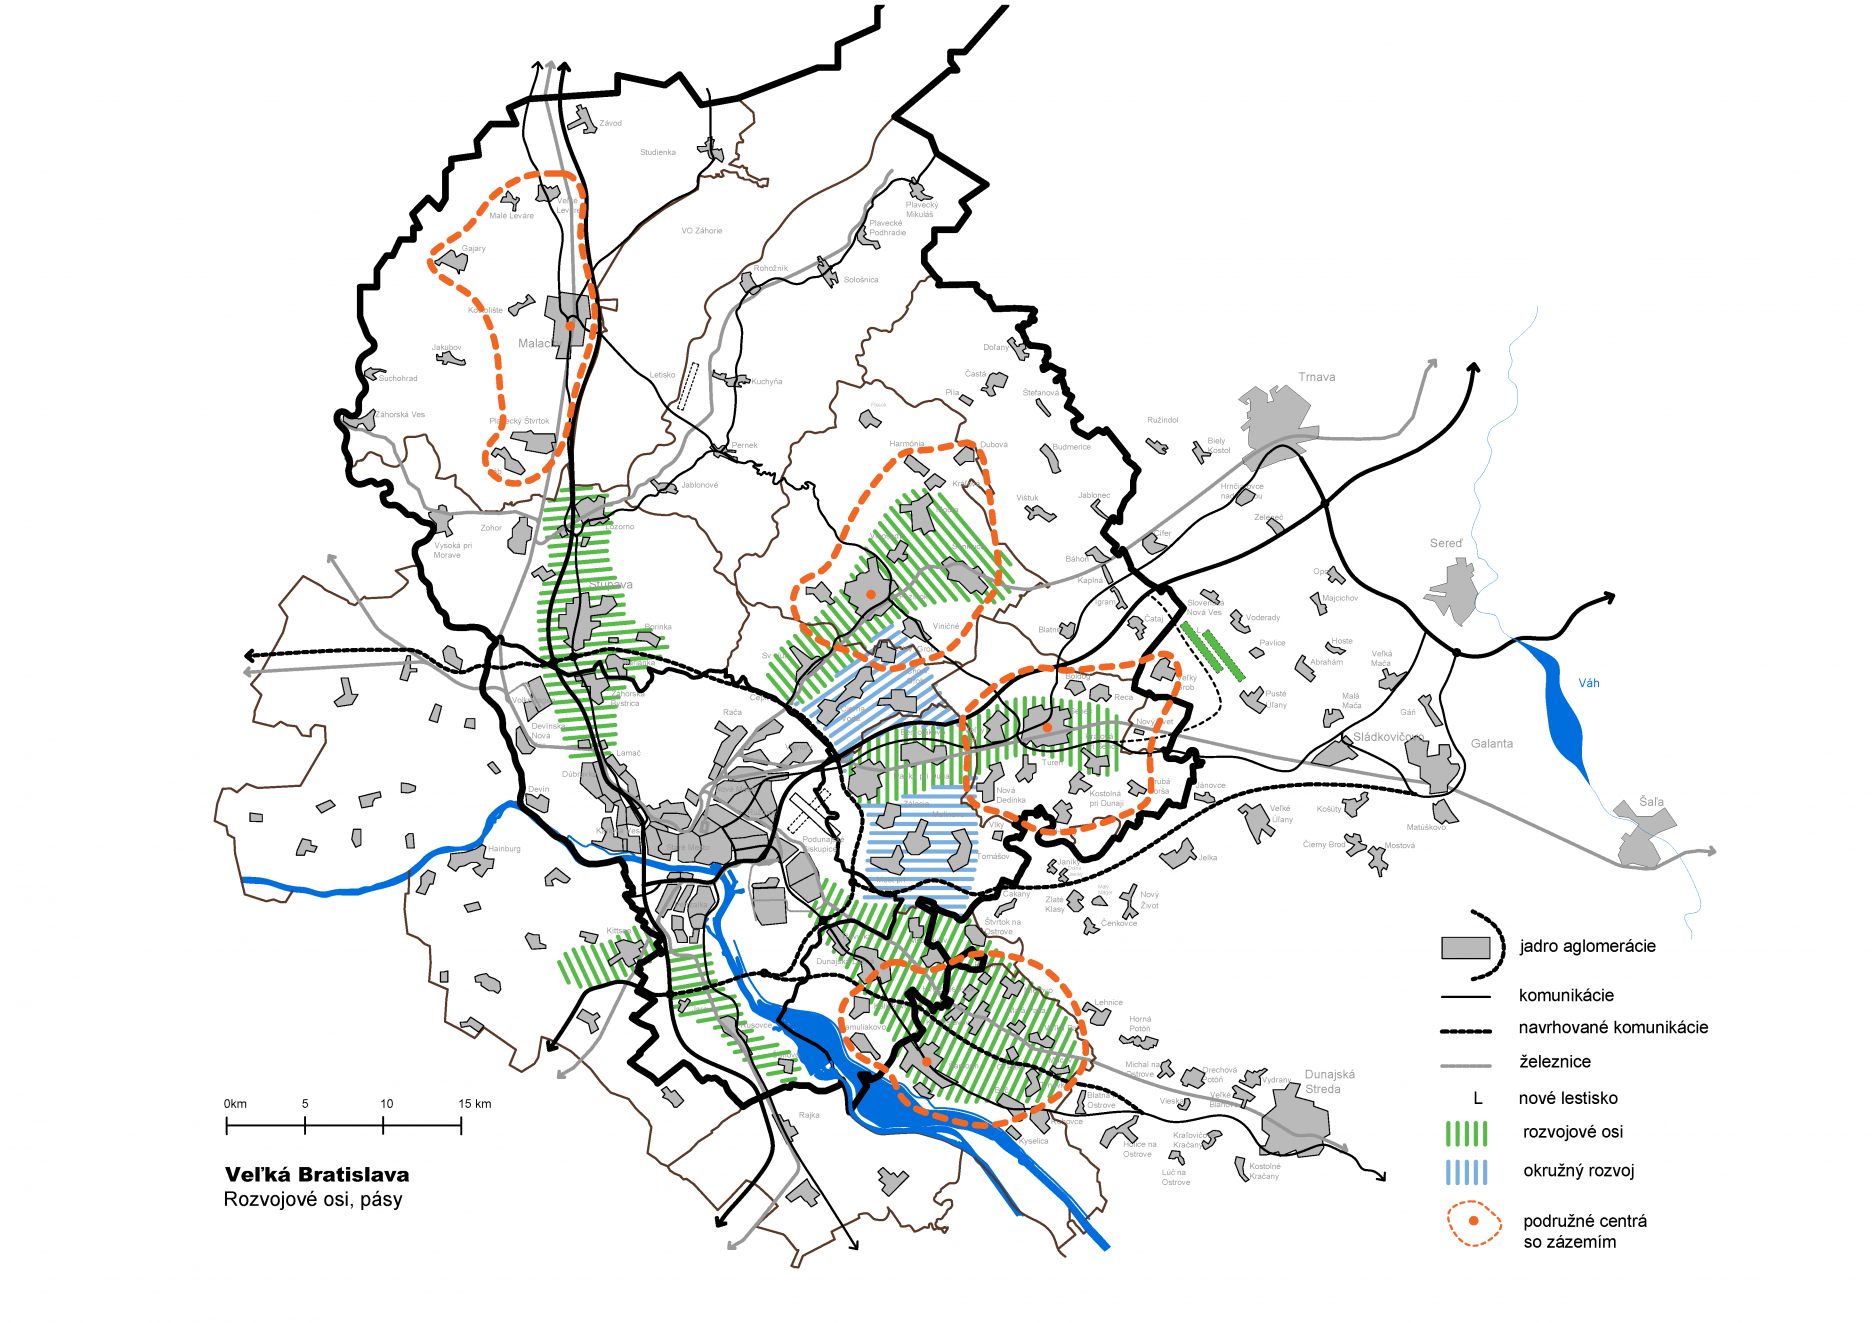 6. Veľká Bratislava -  širšie okolie, rozvojové osi a pásy